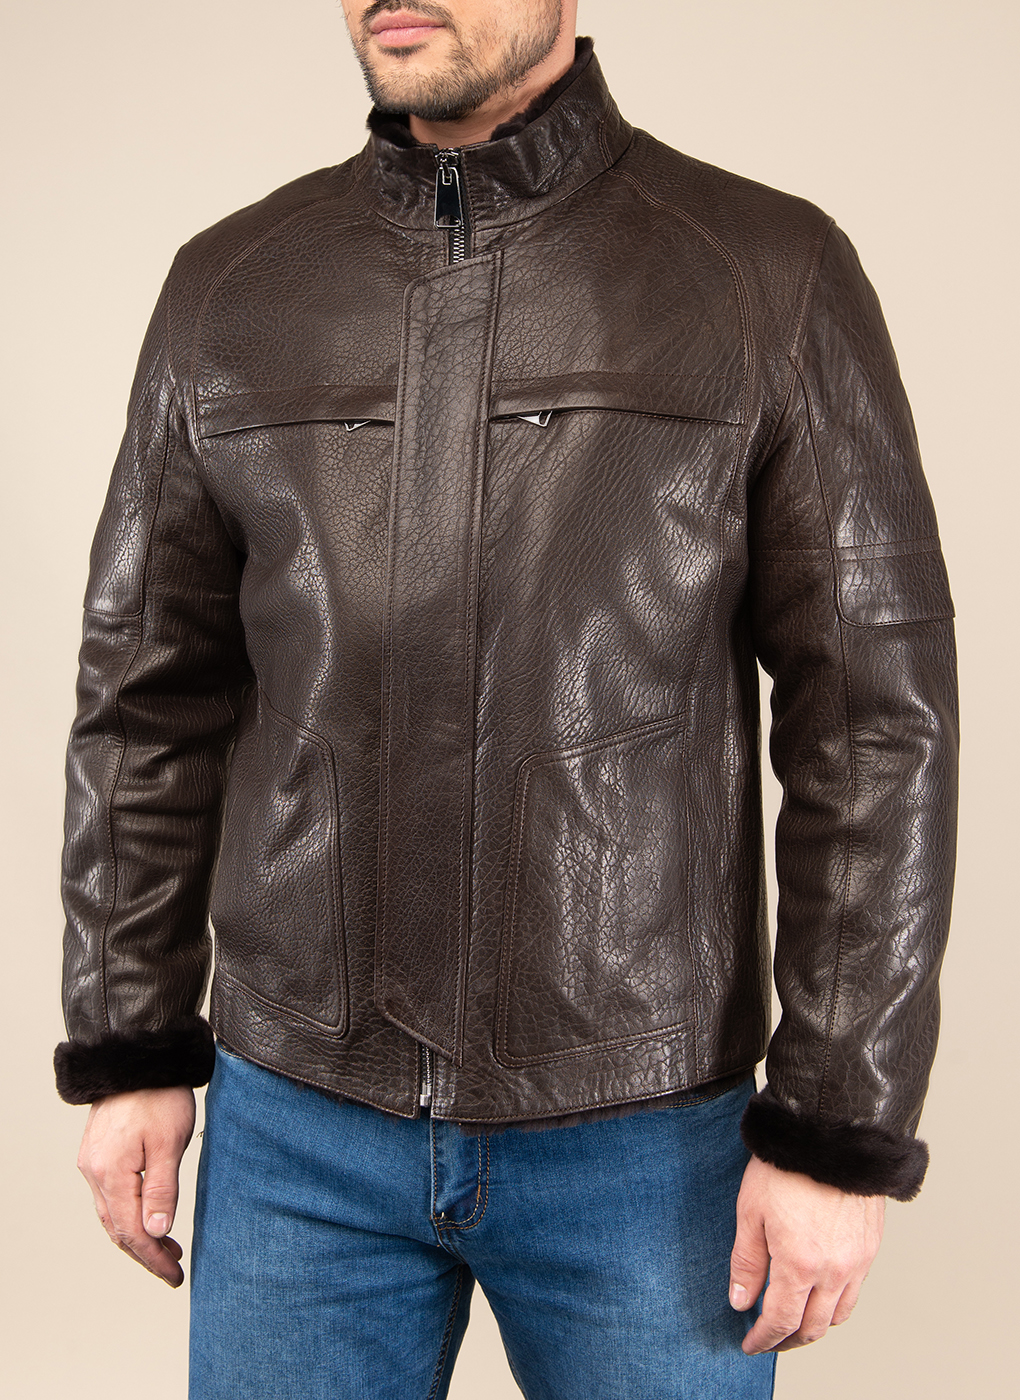 Кожаная куртка мужская Каляев 48960 коричневая 56 RU